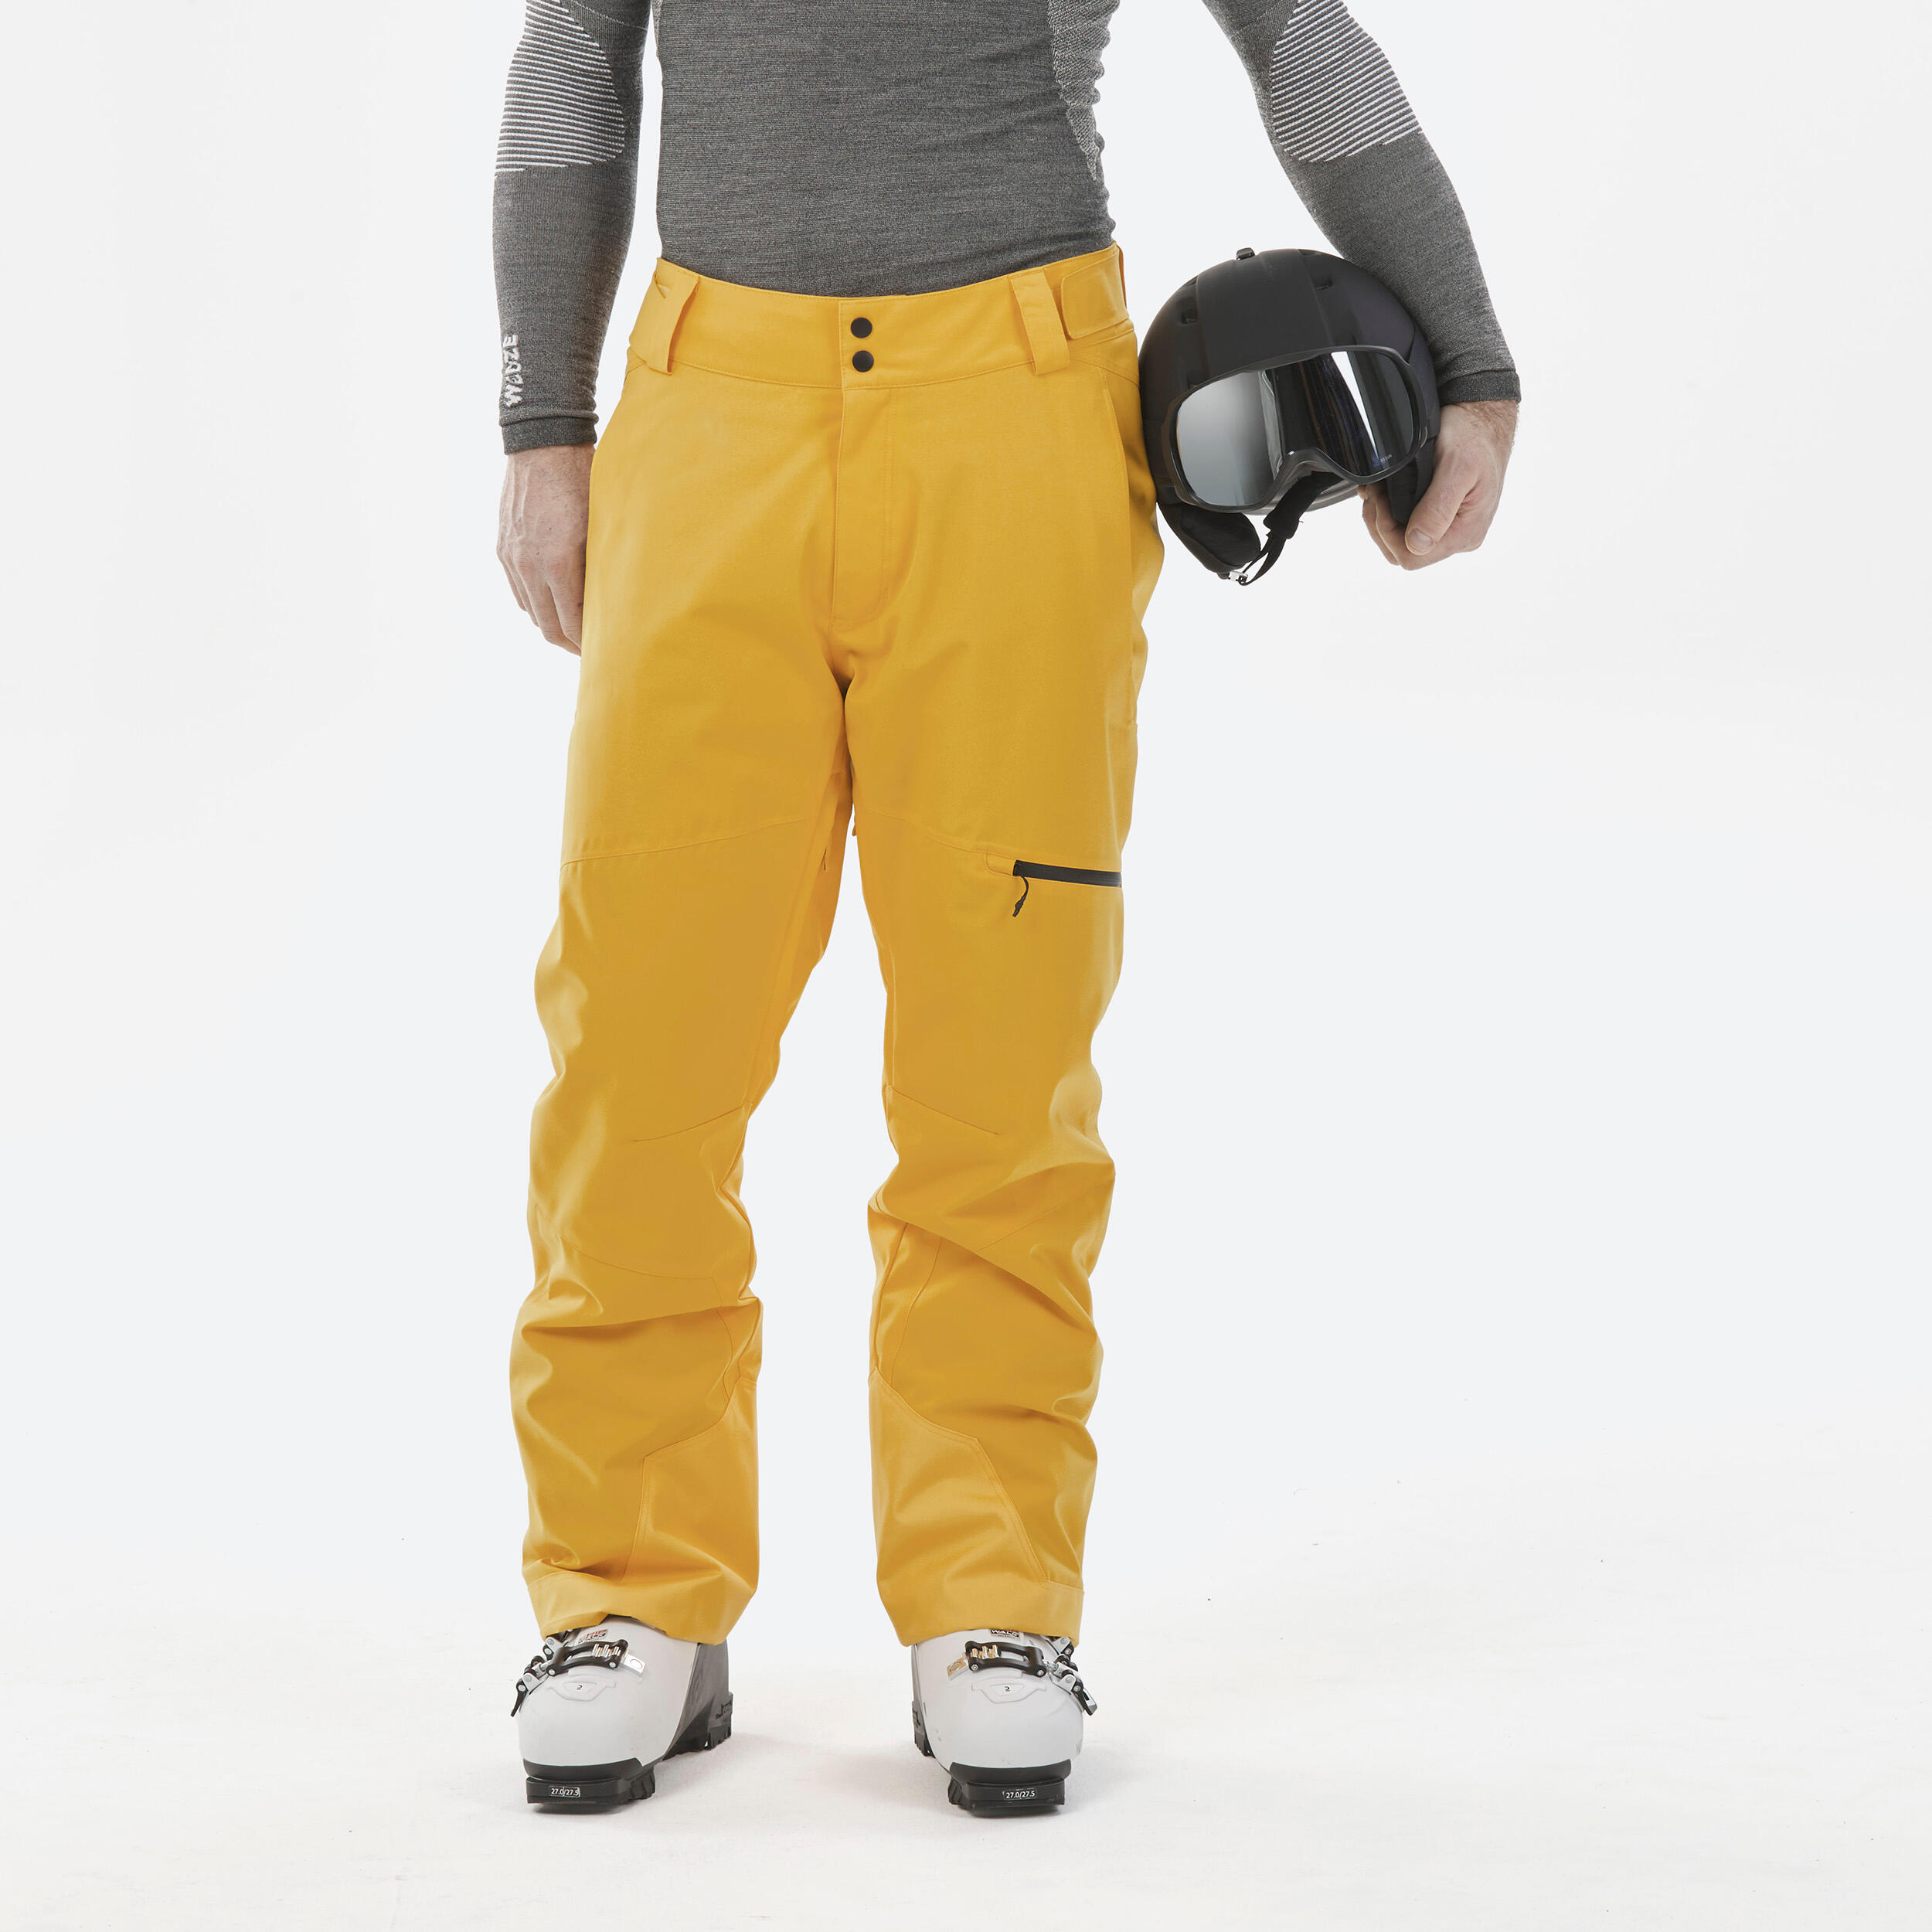 WEDZE Mens Warm Ski Trousers Regular 500 - Light Yellow